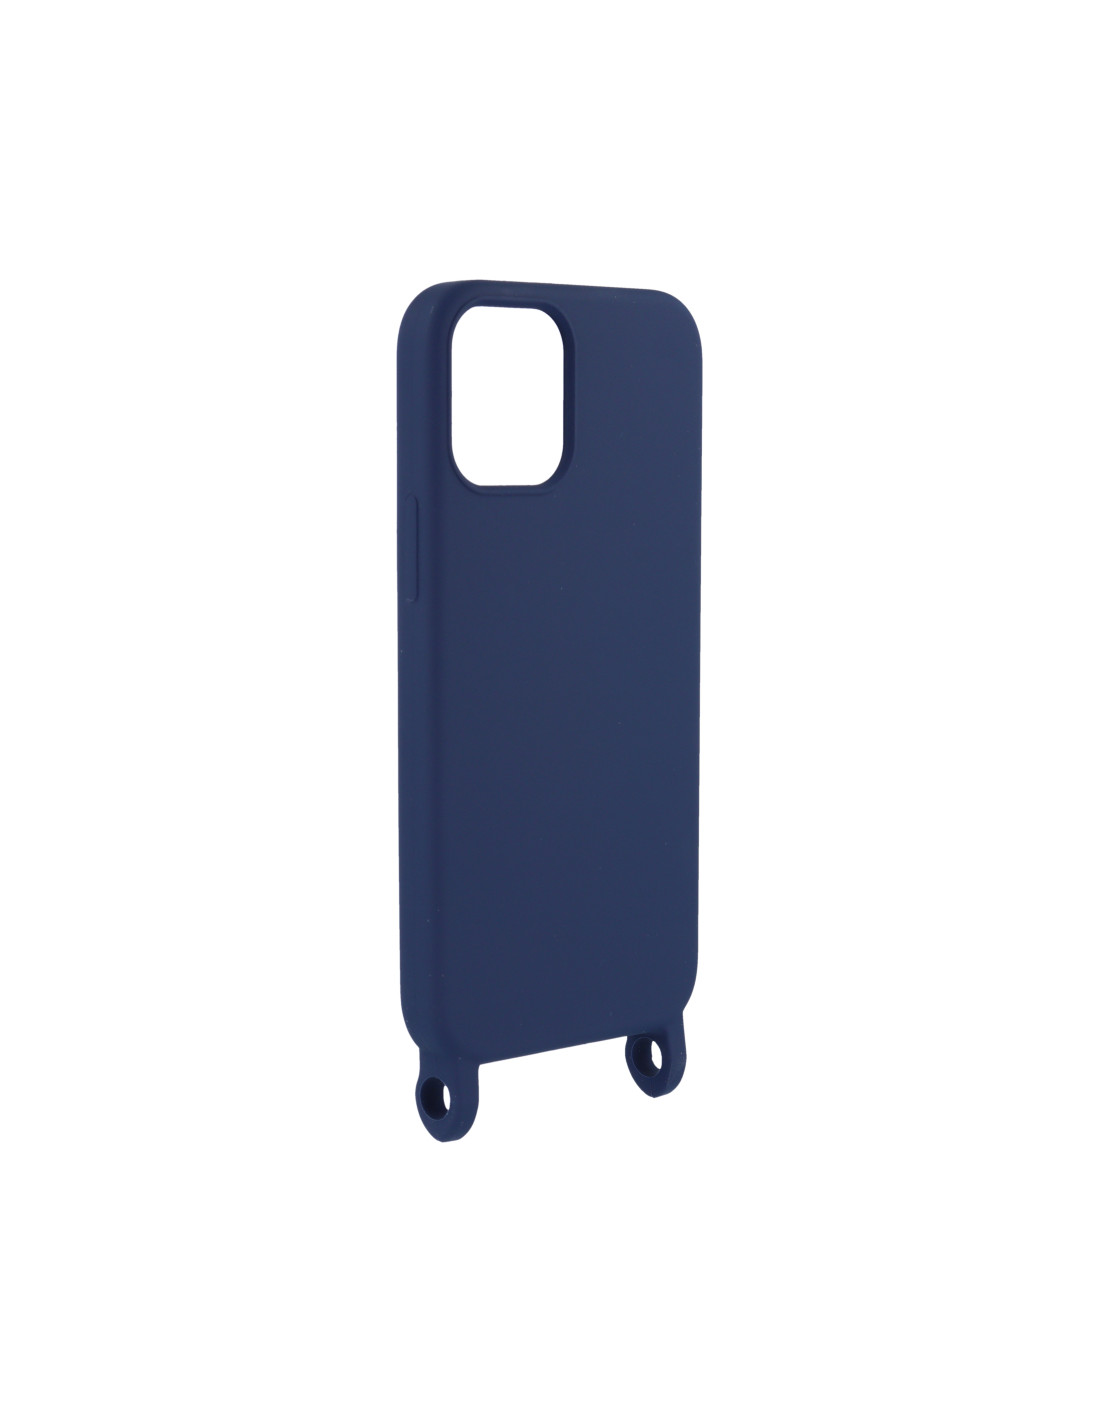 Funda con cuerda iPhone 12 Pro Max (morado/azul) 